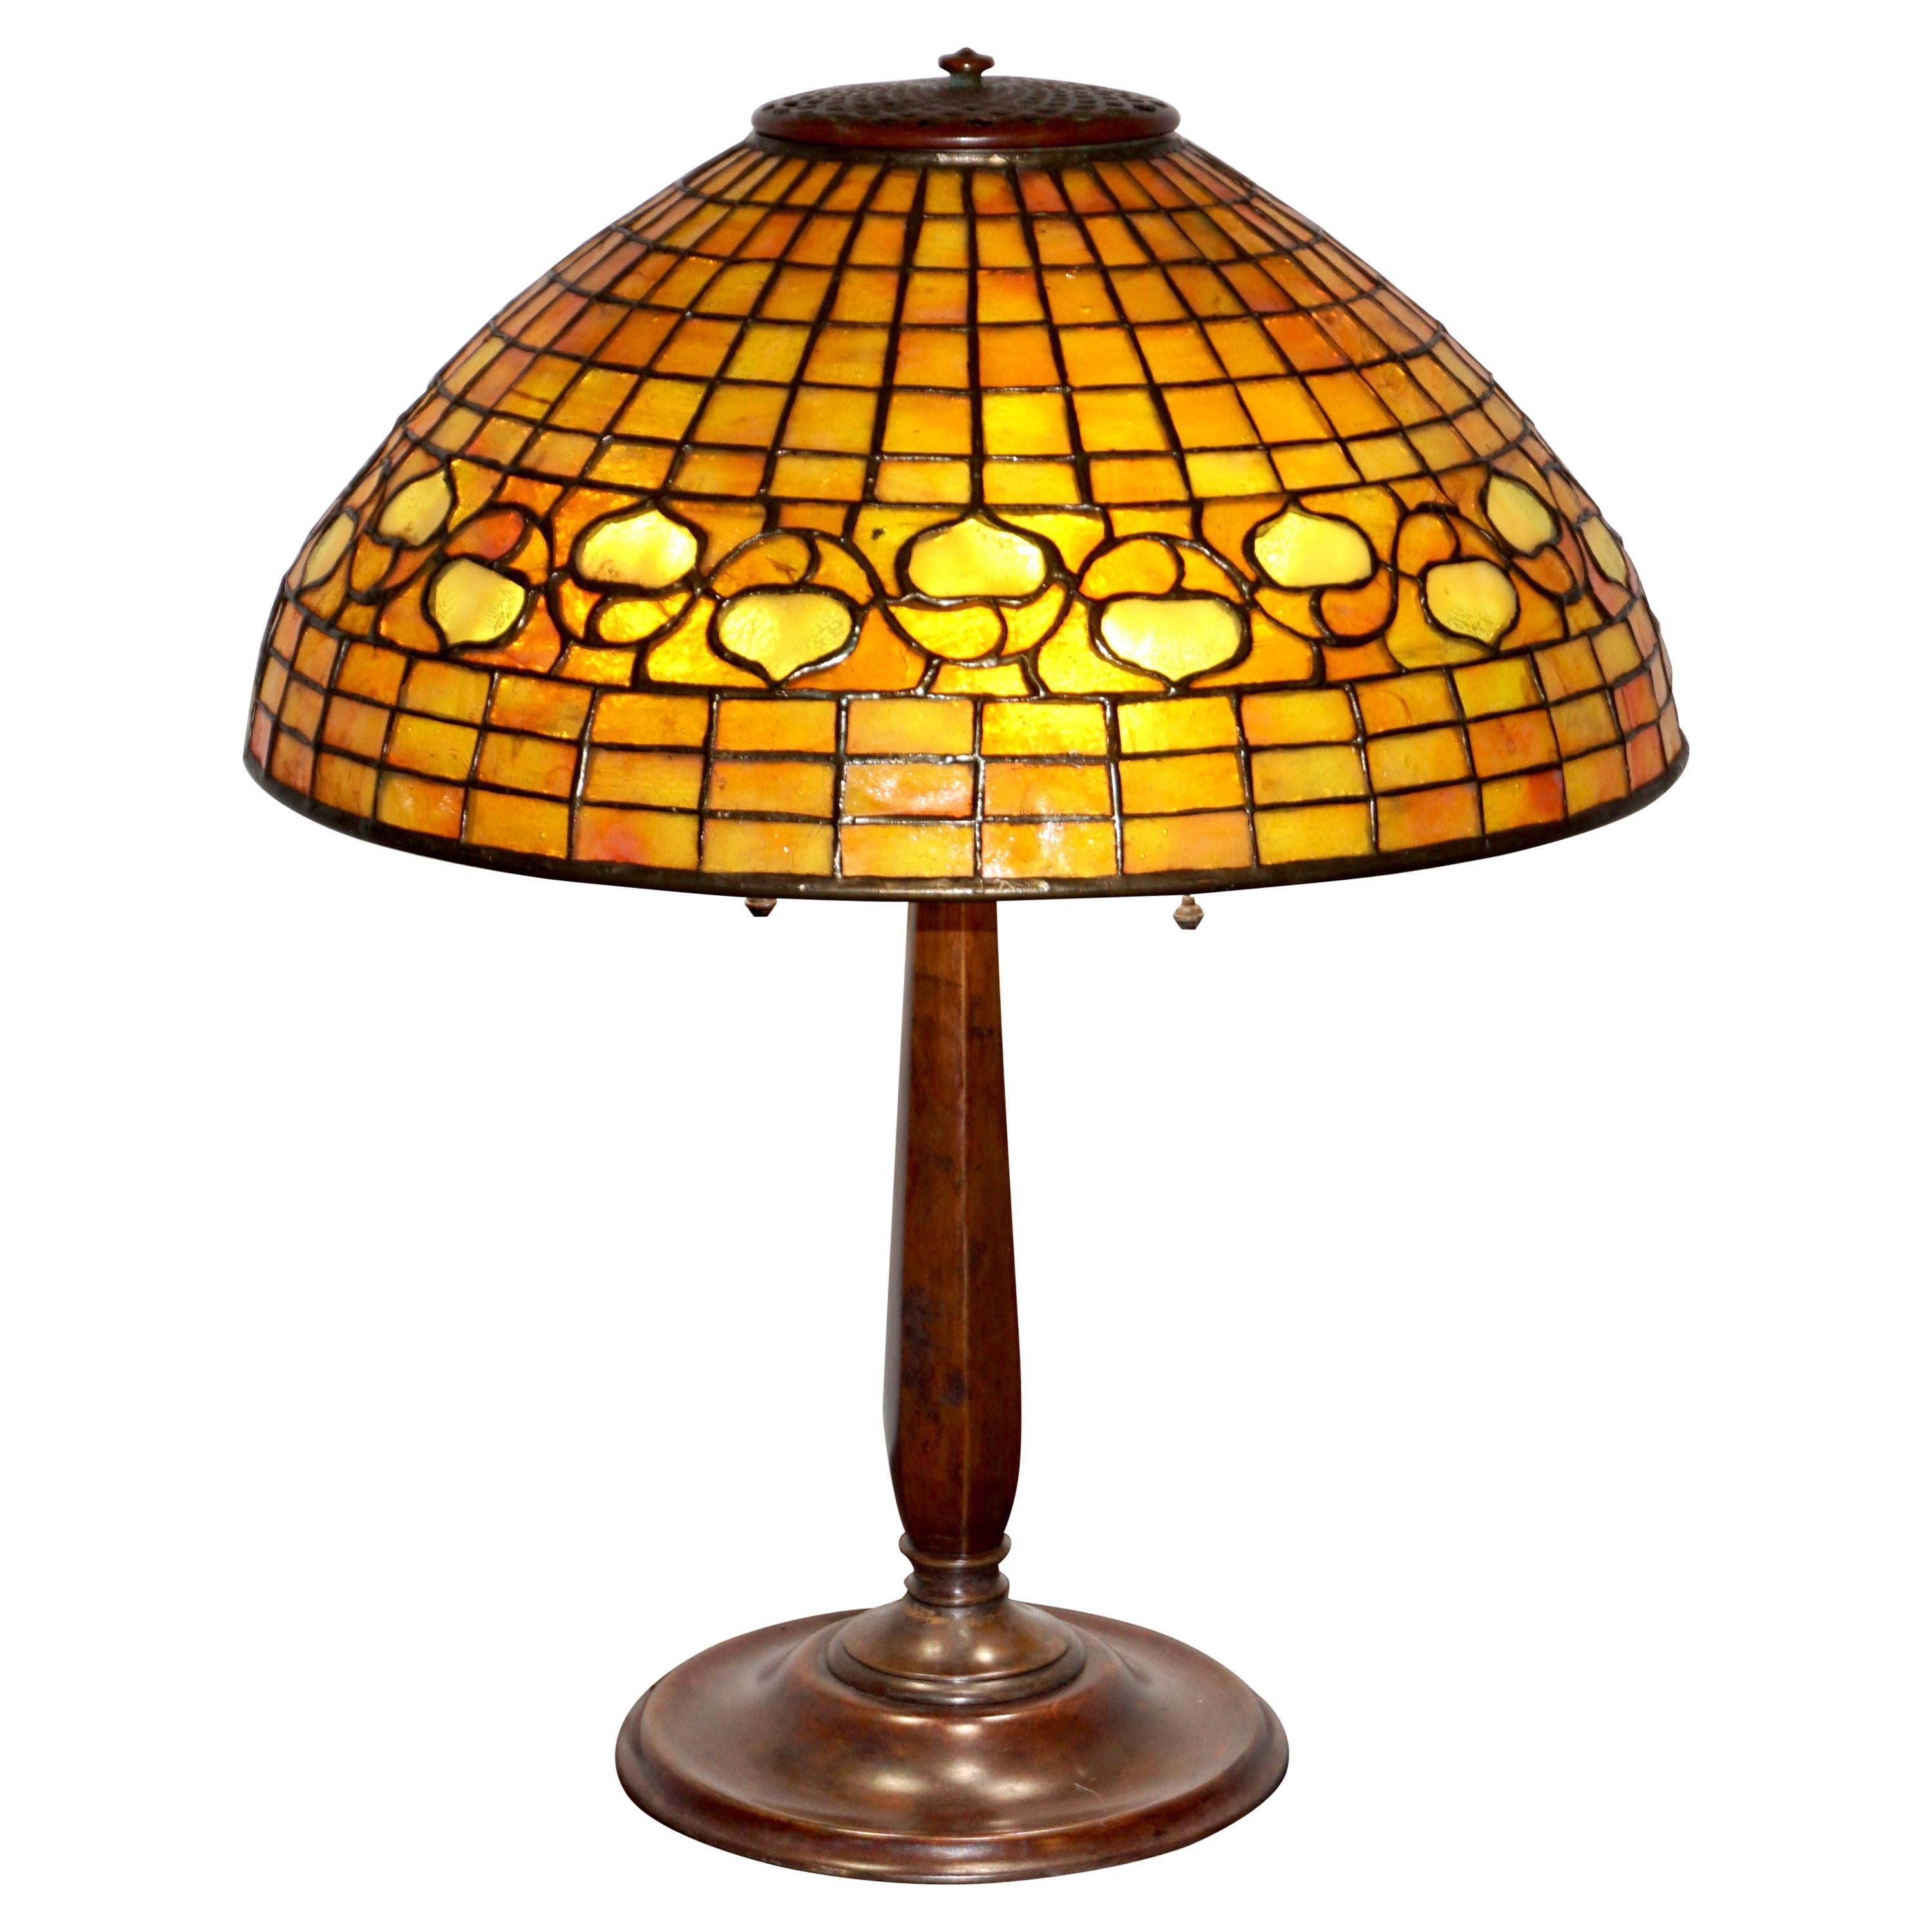 Tiffany Studios “Acorn” Table Lamp